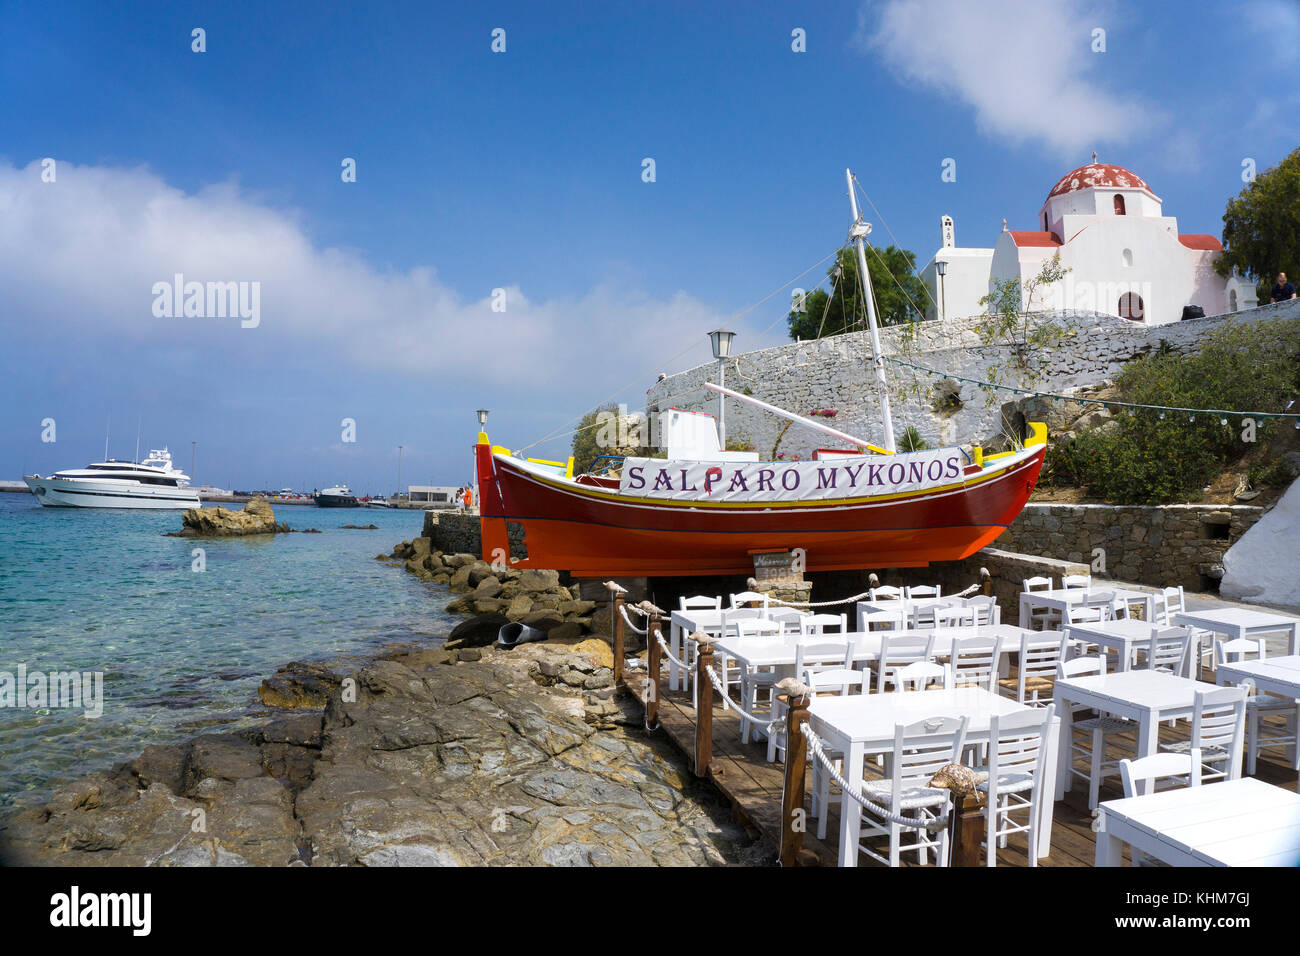 Taverne grecque à la plage, ancien bateau de pêche utilisé pour la décoration, Mykonos-ville, l'île de Mykonos, Cyclades, Mer Égée, Grèce Banque D'Images